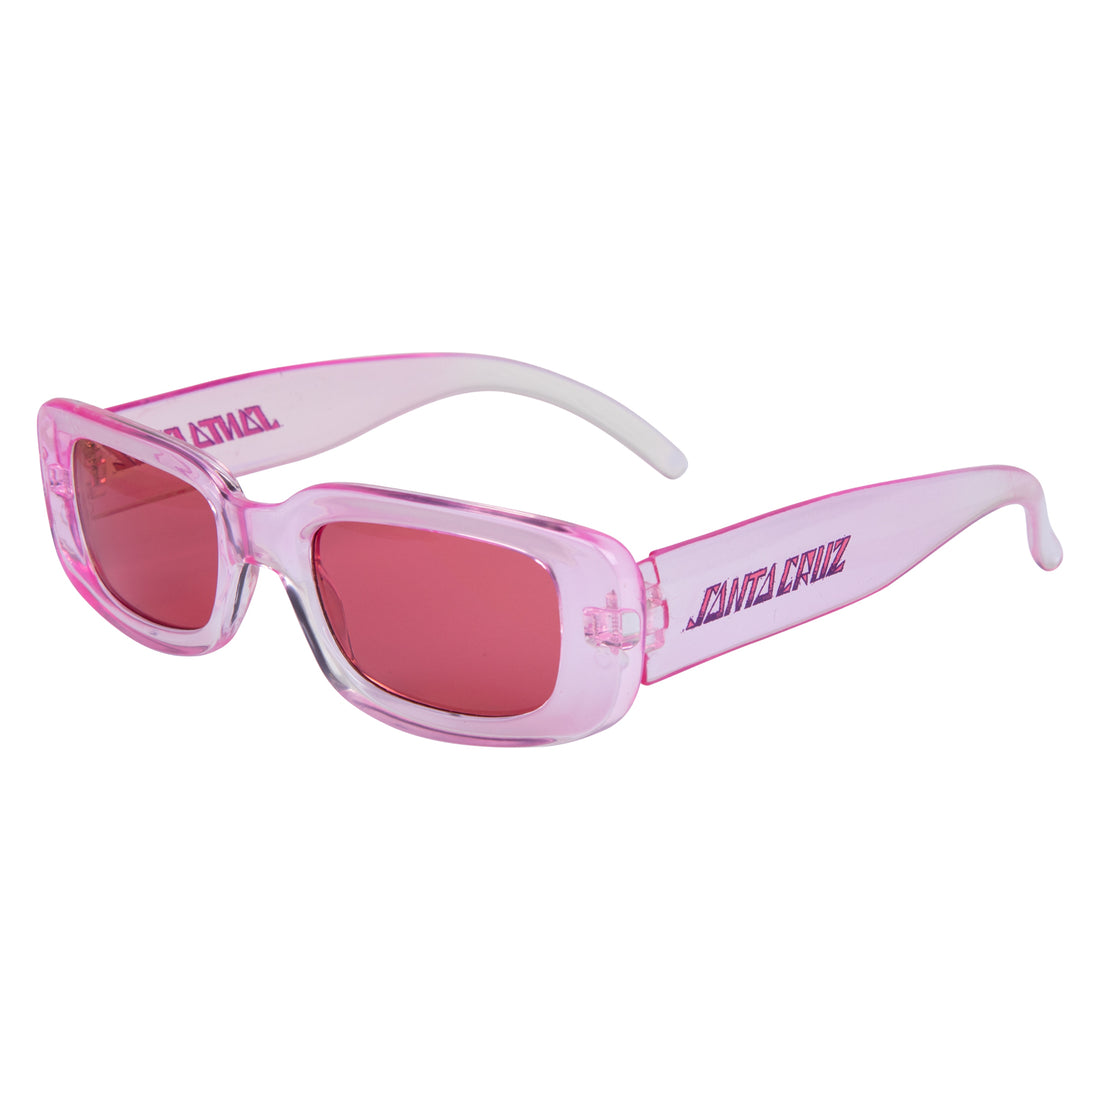 Santa Cruz Paradise Strip Sunglasses